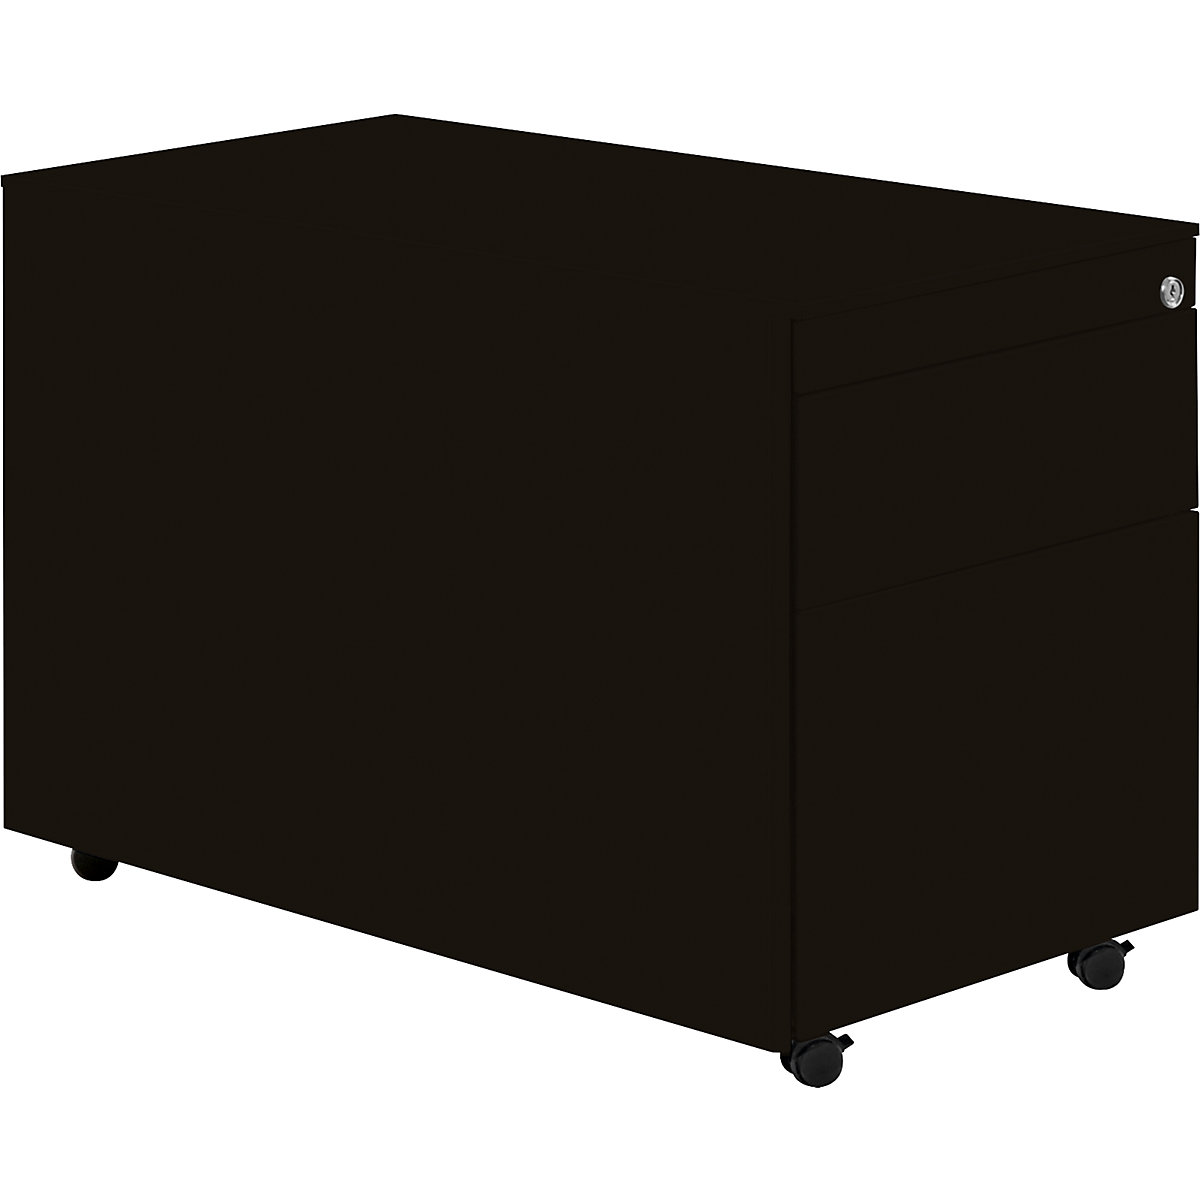 Zásuvkový kontejner s koly – mauser, v x h 570 x 800 mm, 1 zásuvka na materiál, 1 kartotéka pro závěsné složky, grafitově černá / grafitově černá / grafitově černá-7